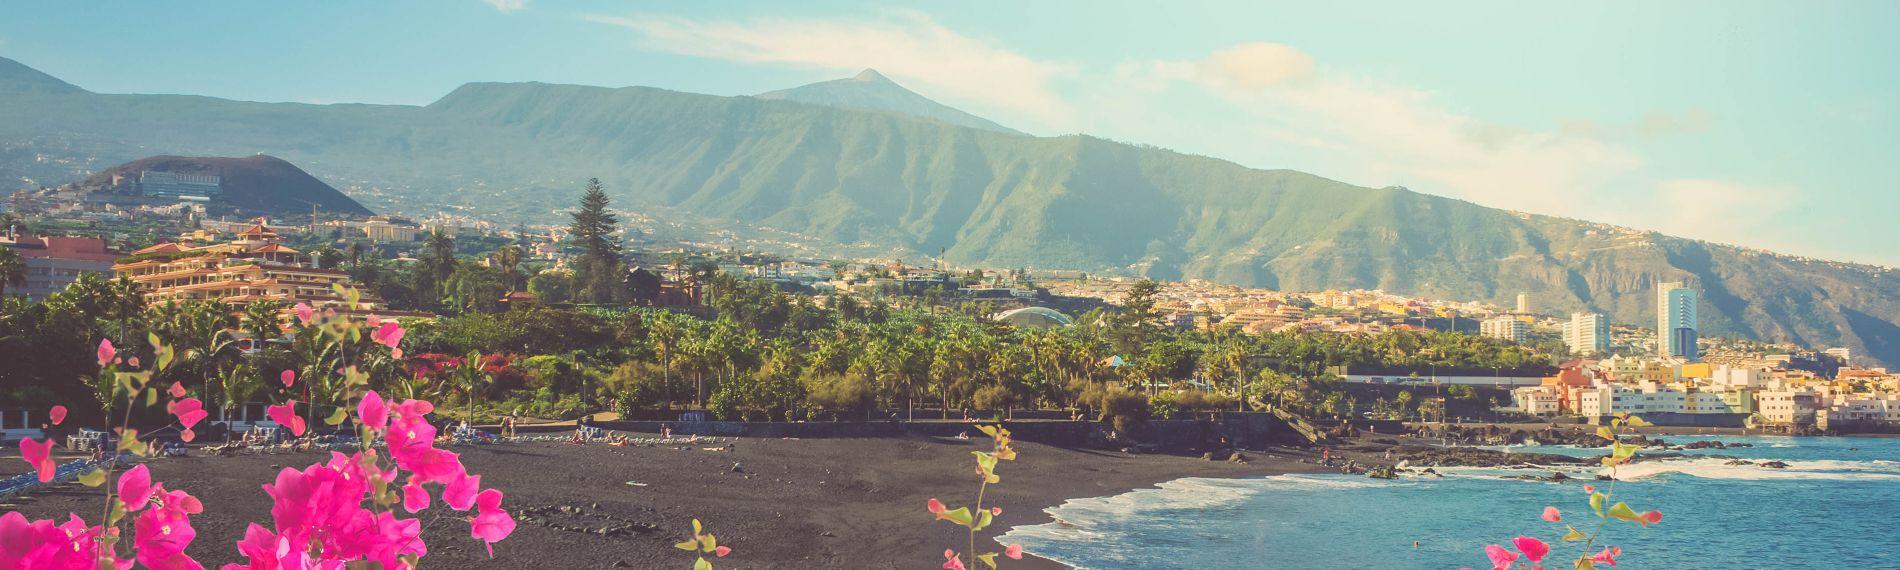 Playa Jardin, Tenerife's black sand 'garden beach', with Puerto de la Cruz and the peak of Mount Teide beyond the trees